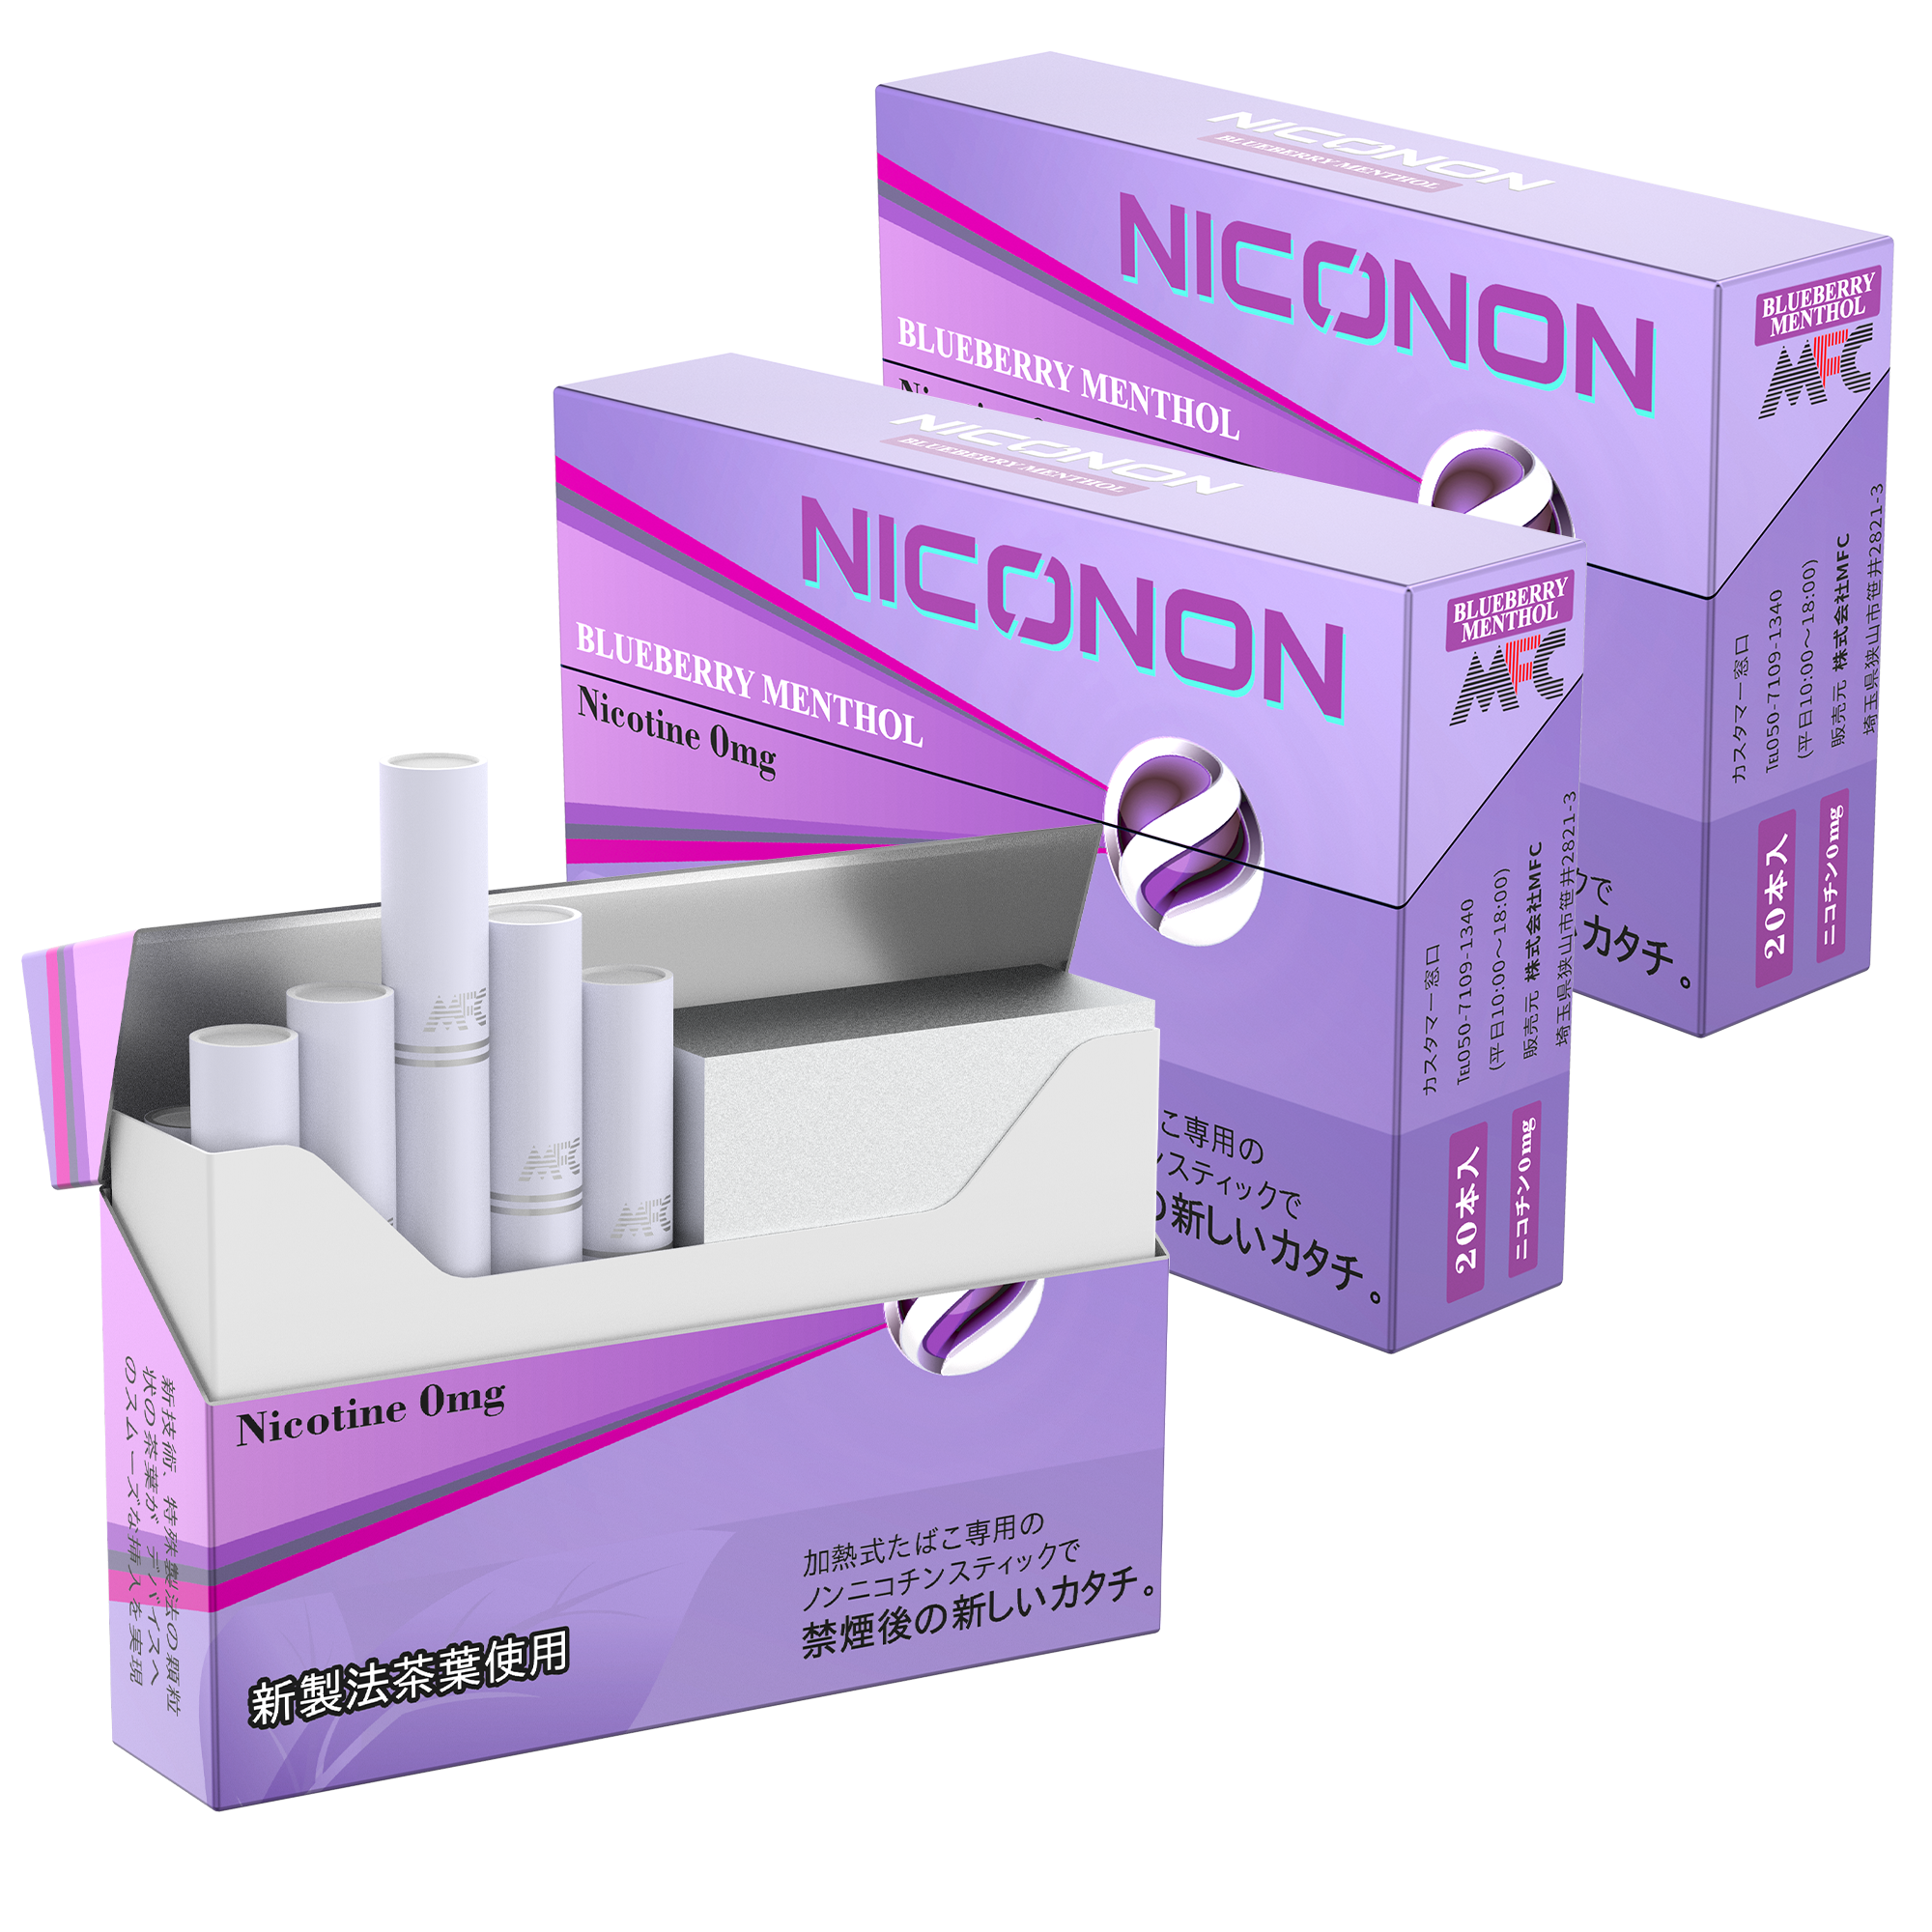 うまさで定評の加熱式たばこデバイス用ニコチン ゼロスティック Niconon ニコノン に新定番 ブルーベリーメンソール 追加 株式会社晴和のプレスリリース